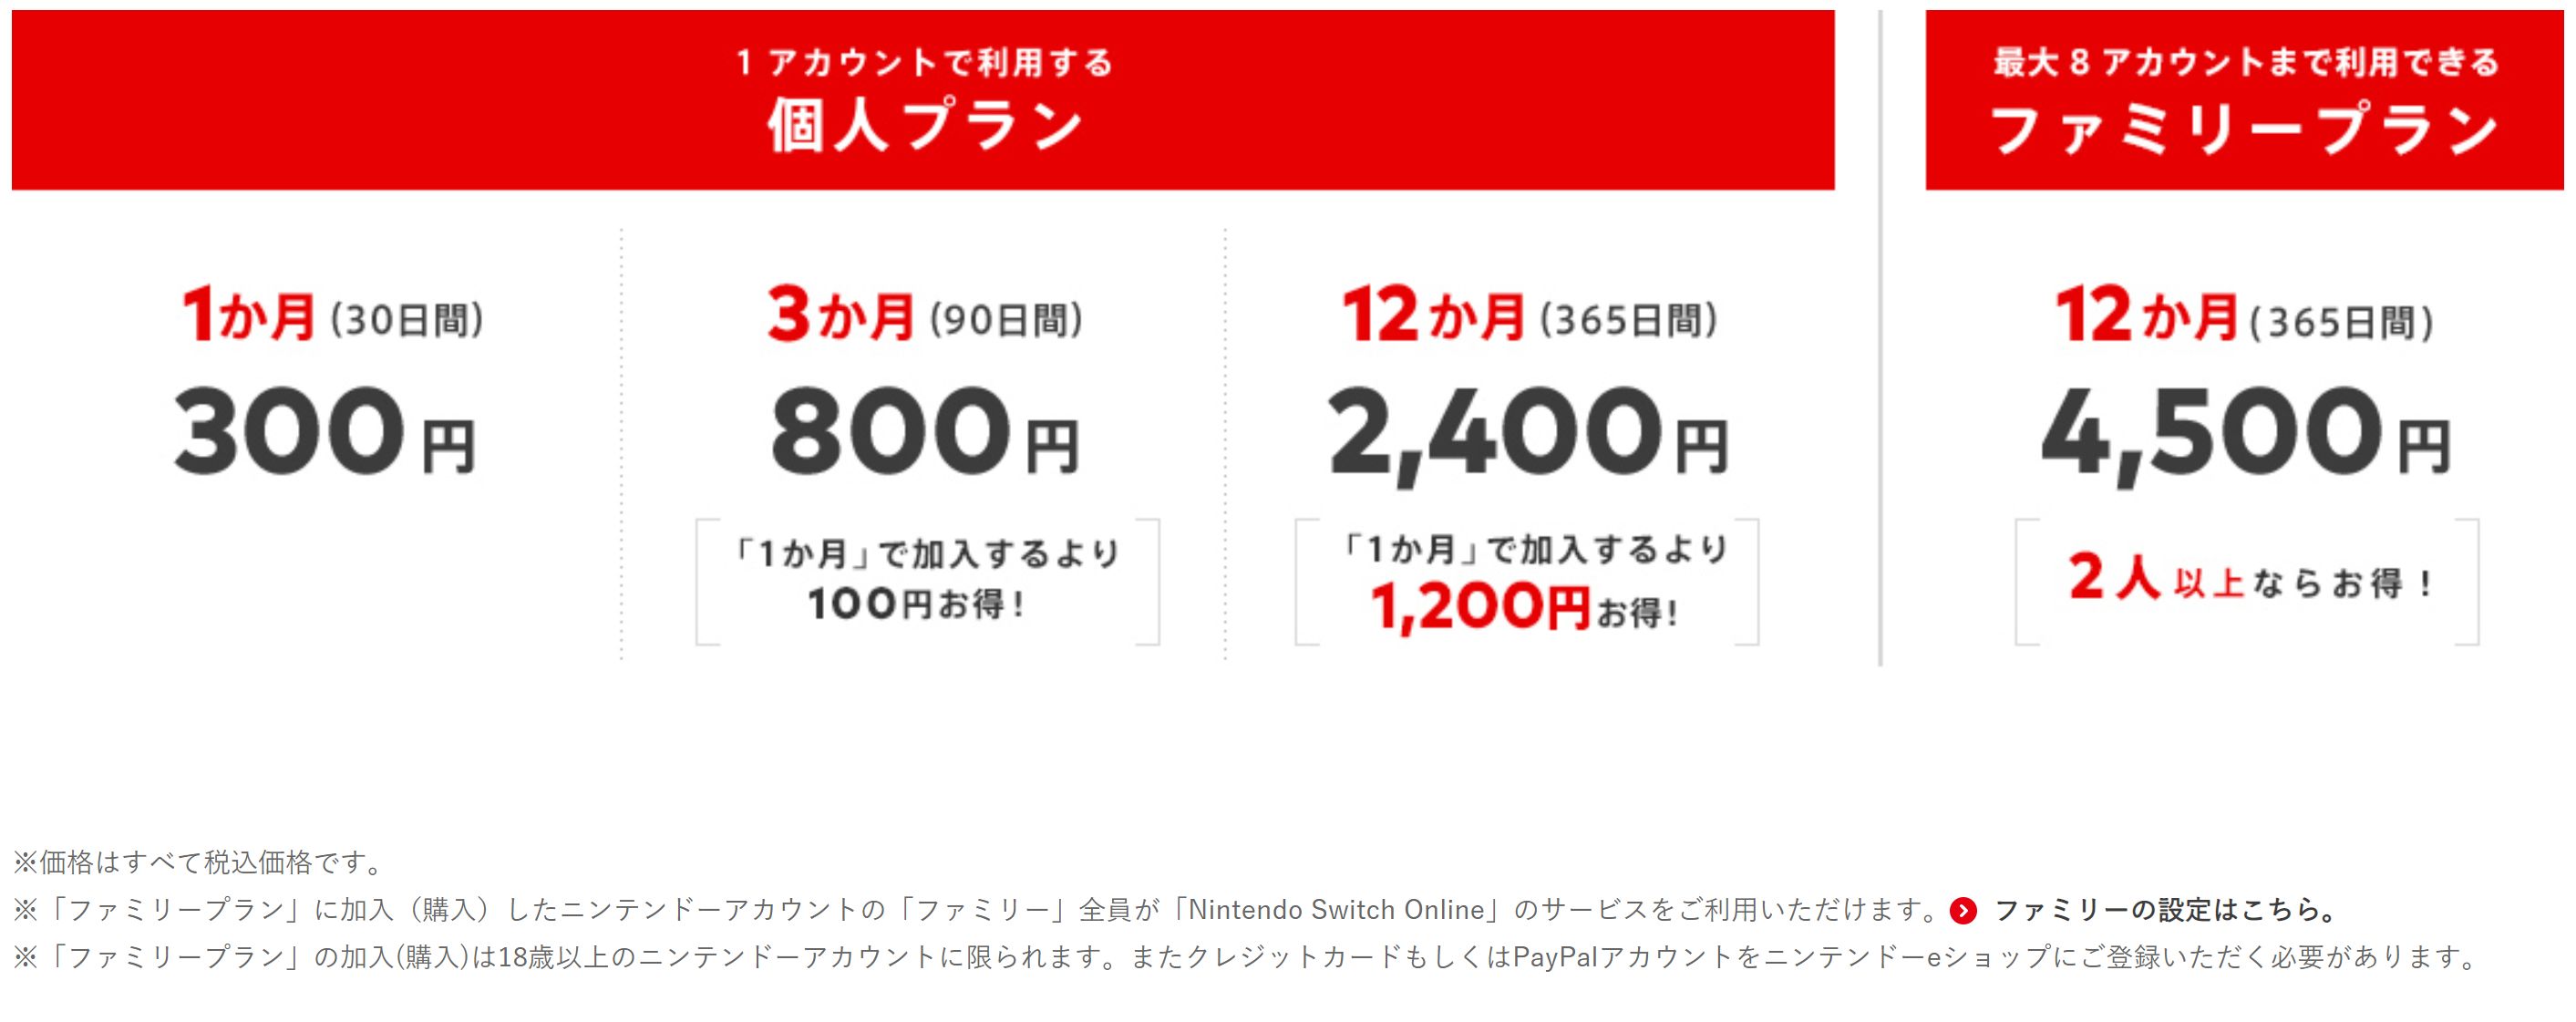 ファミリー ニンテンドー オンライン 「Nintendo Switch